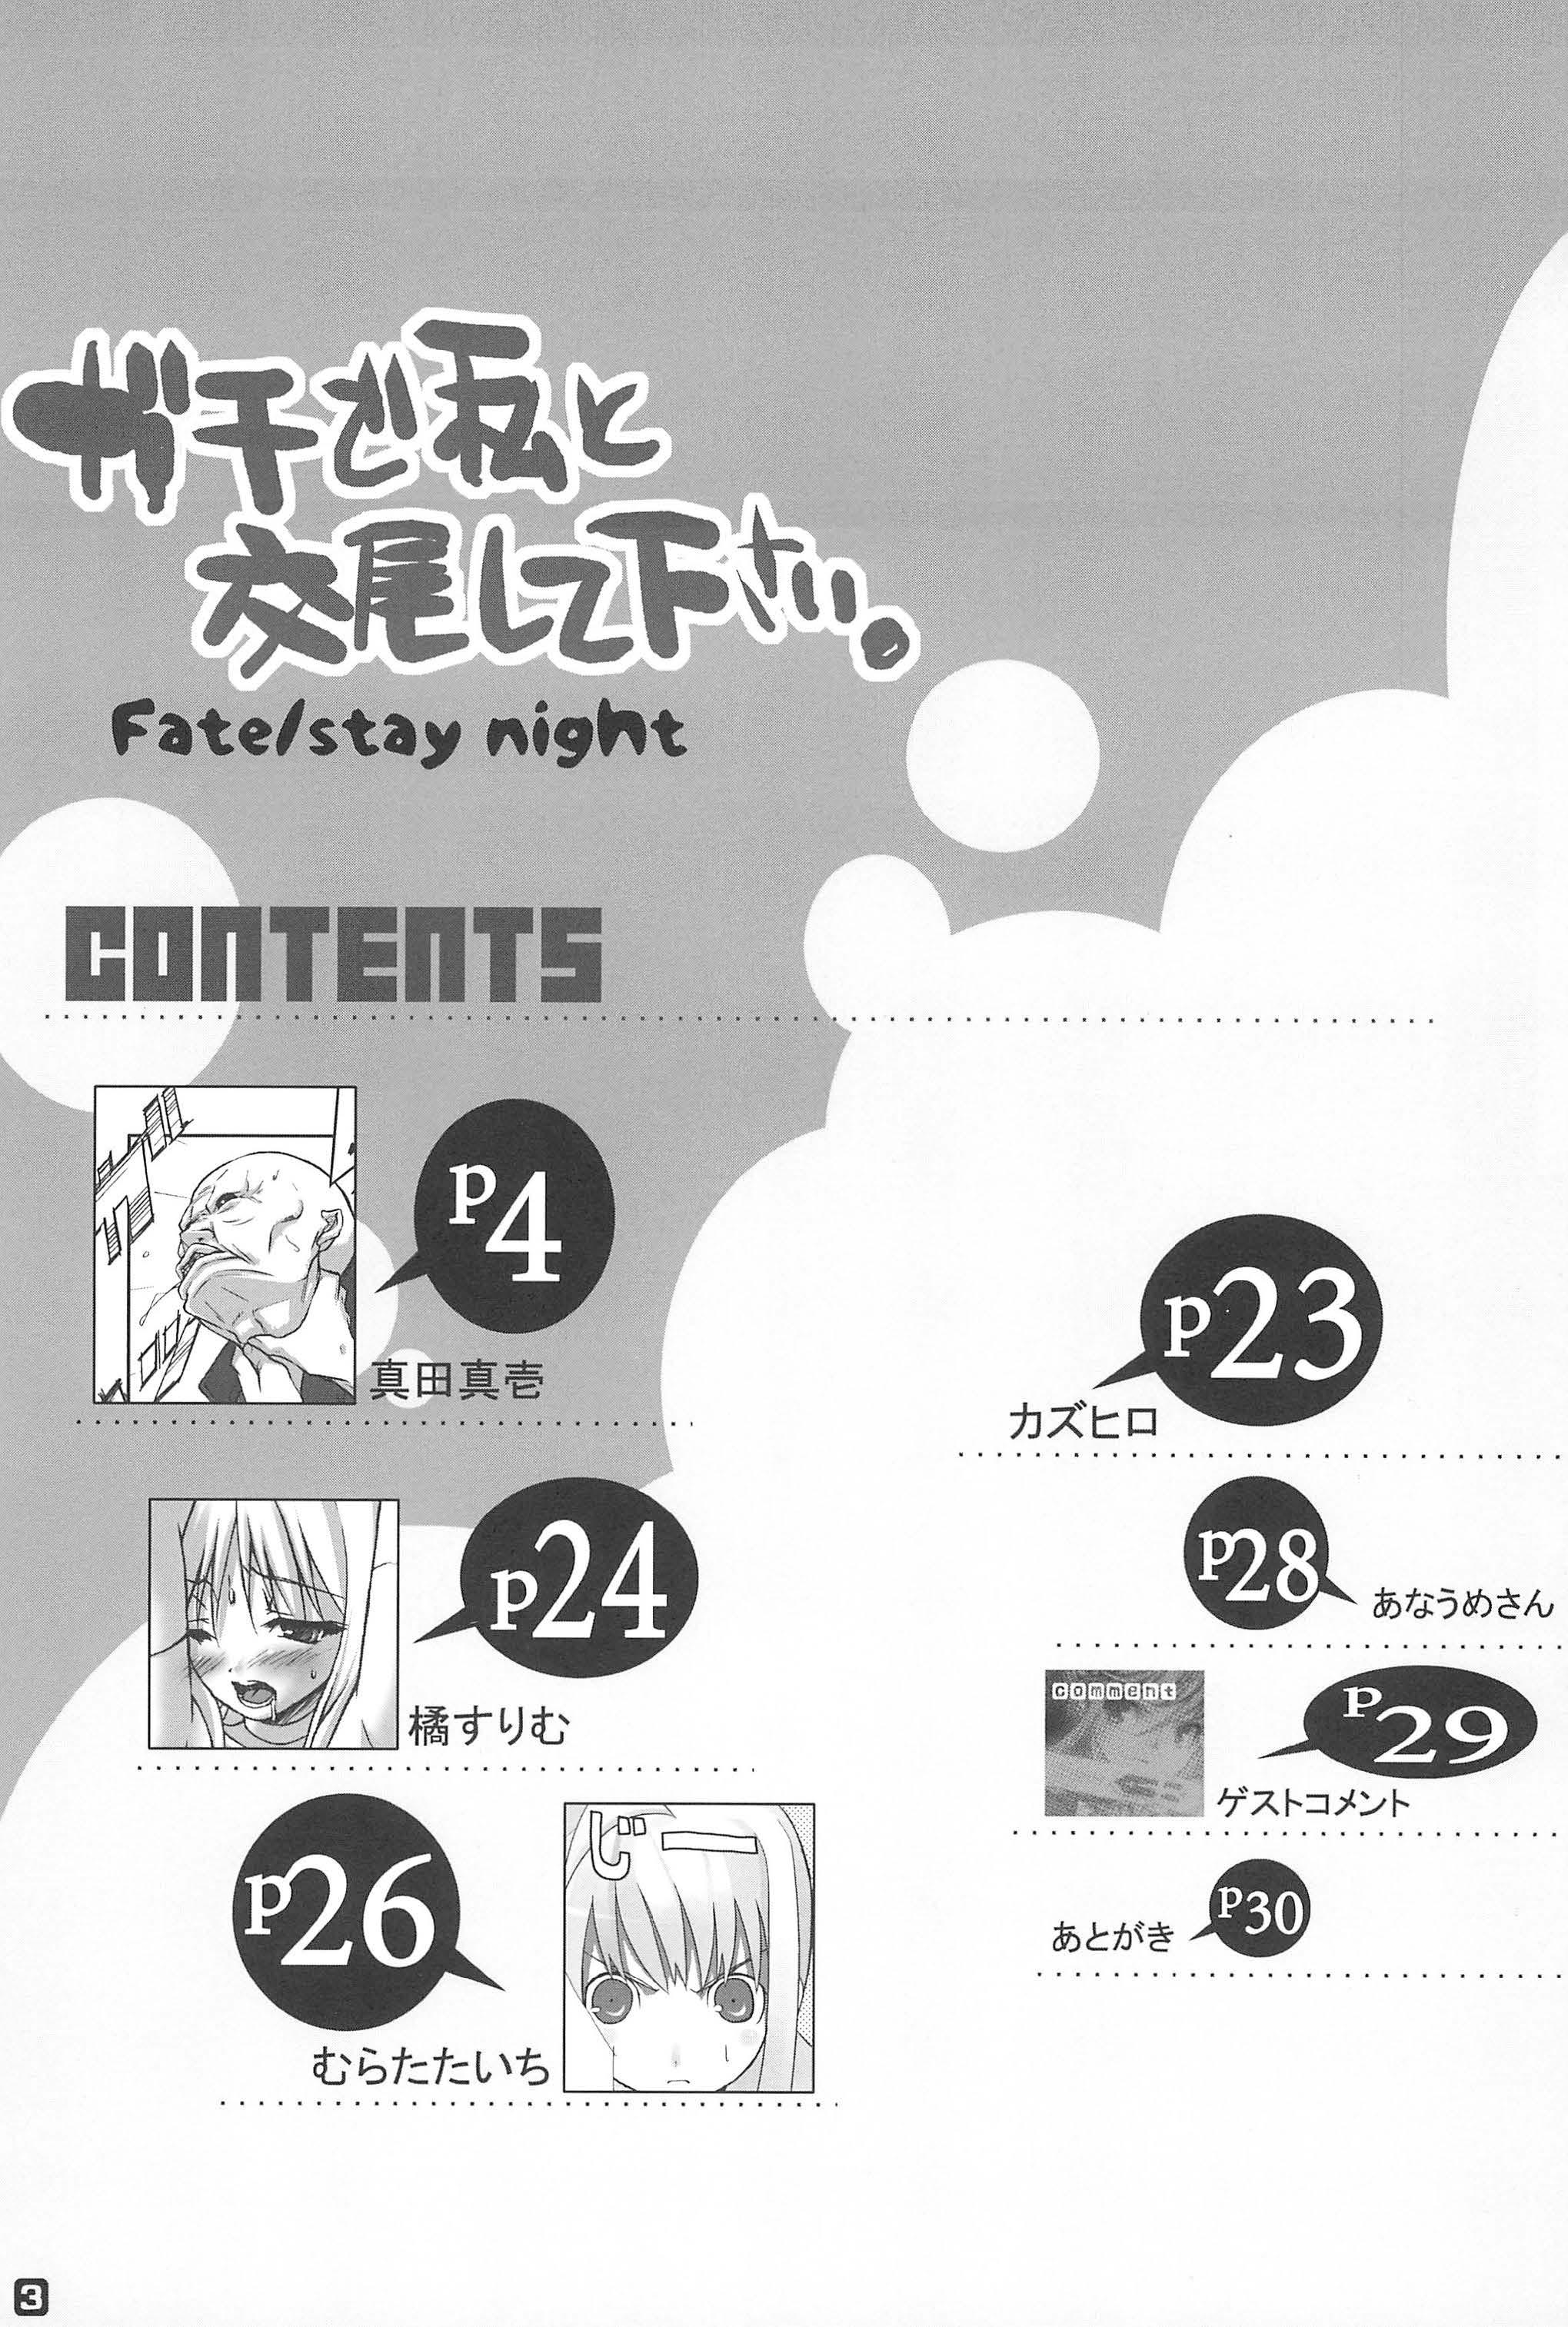 Dirty Talk Gachi de Watashi to Koubi Shite Kudasai. - Fate stay night Sexcams - Page 3